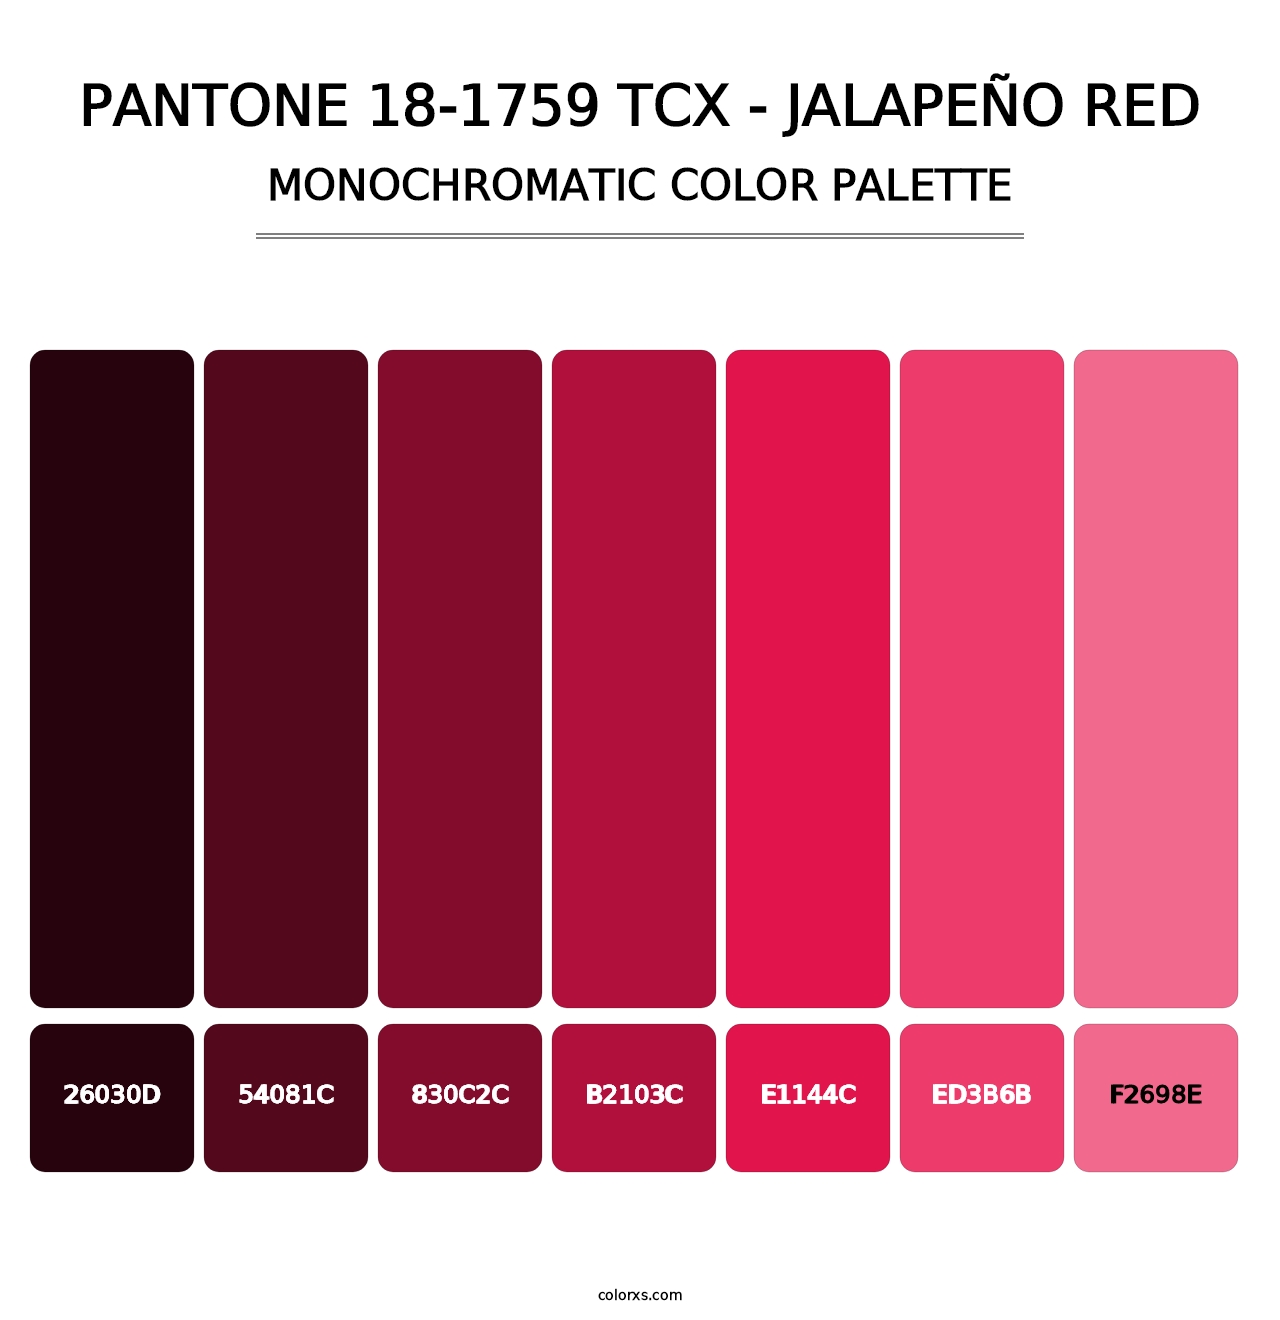 PANTONE 18-1759 TCX - Jalapeño Red - Monochromatic Color Palette